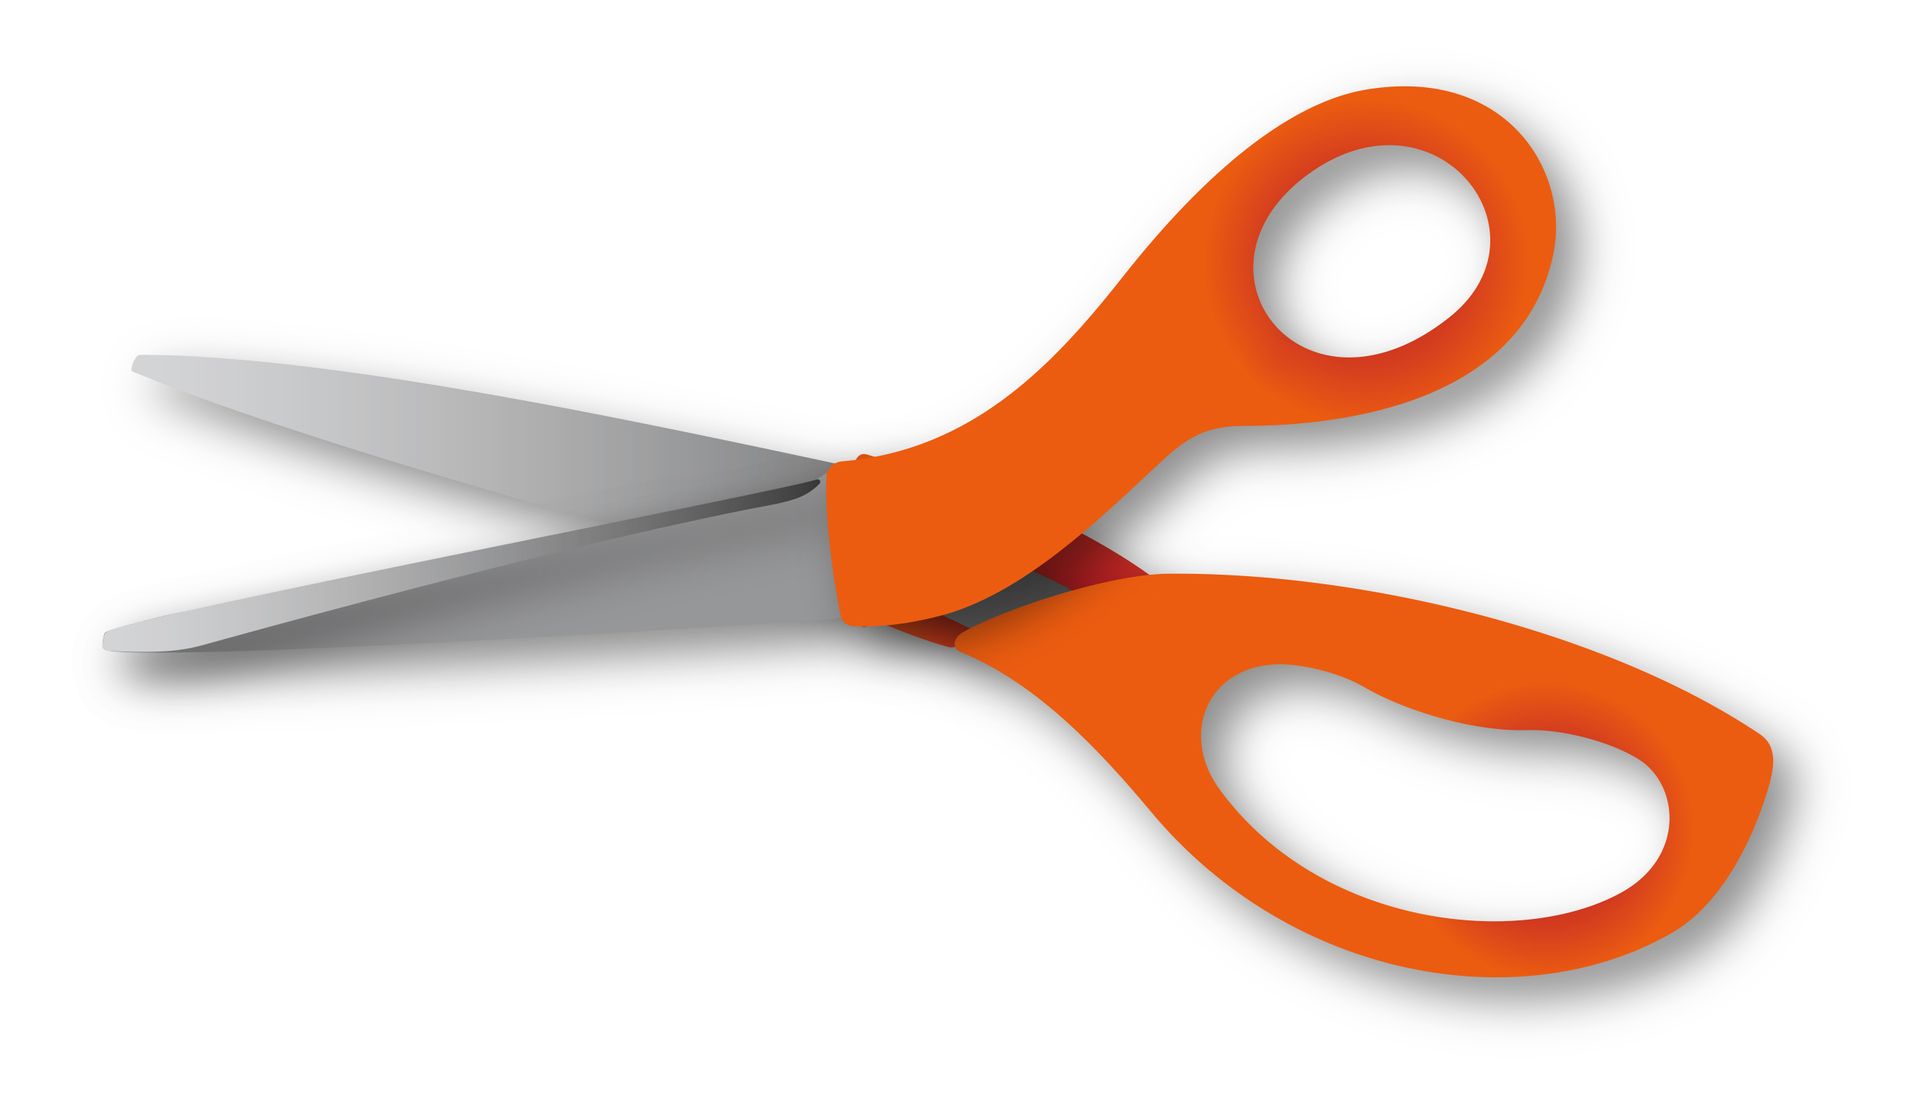 A pair of scissors.